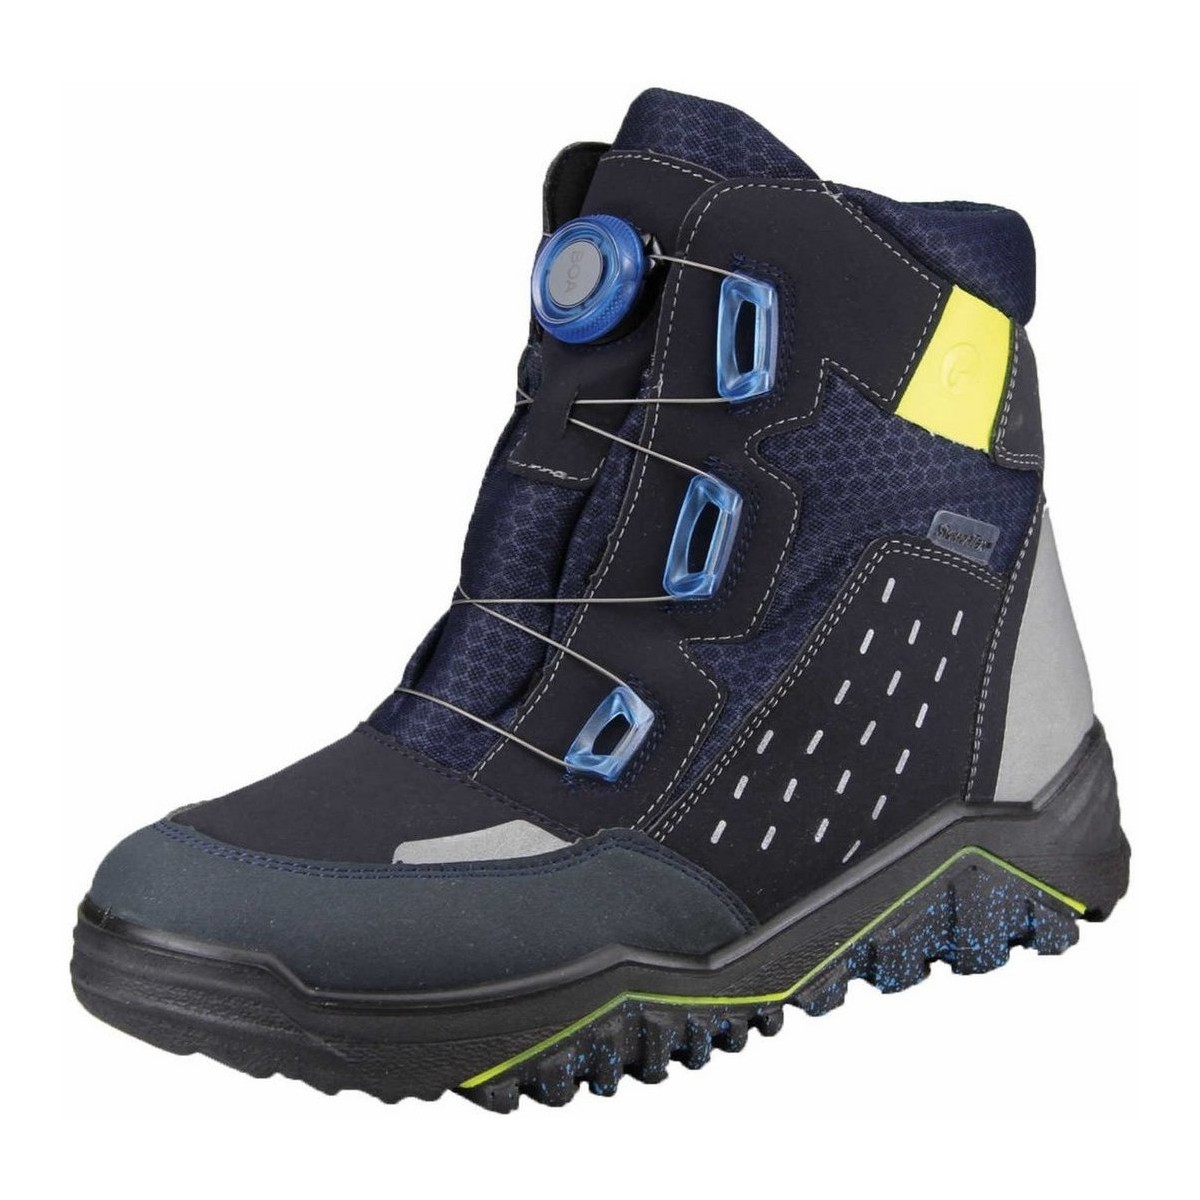 Schuhe Jungen Wanderschuhe Ricosta Bergschuhe Ice 9700402-180 Blau